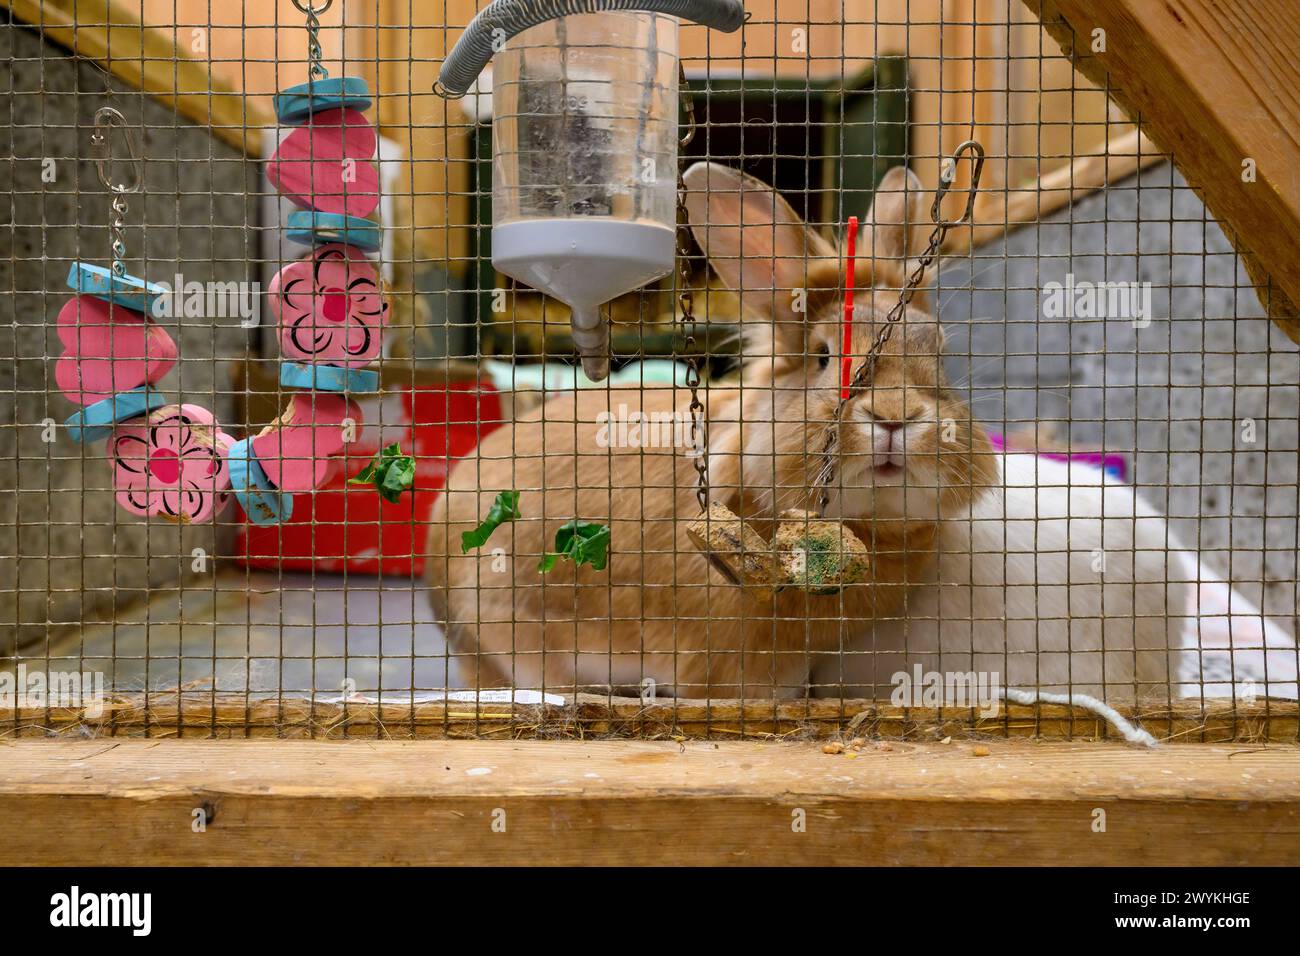 Images de stock au centre de relogement de la SPCA écossaise, lapin Hamilton Brown dans une cage Banque D'Images